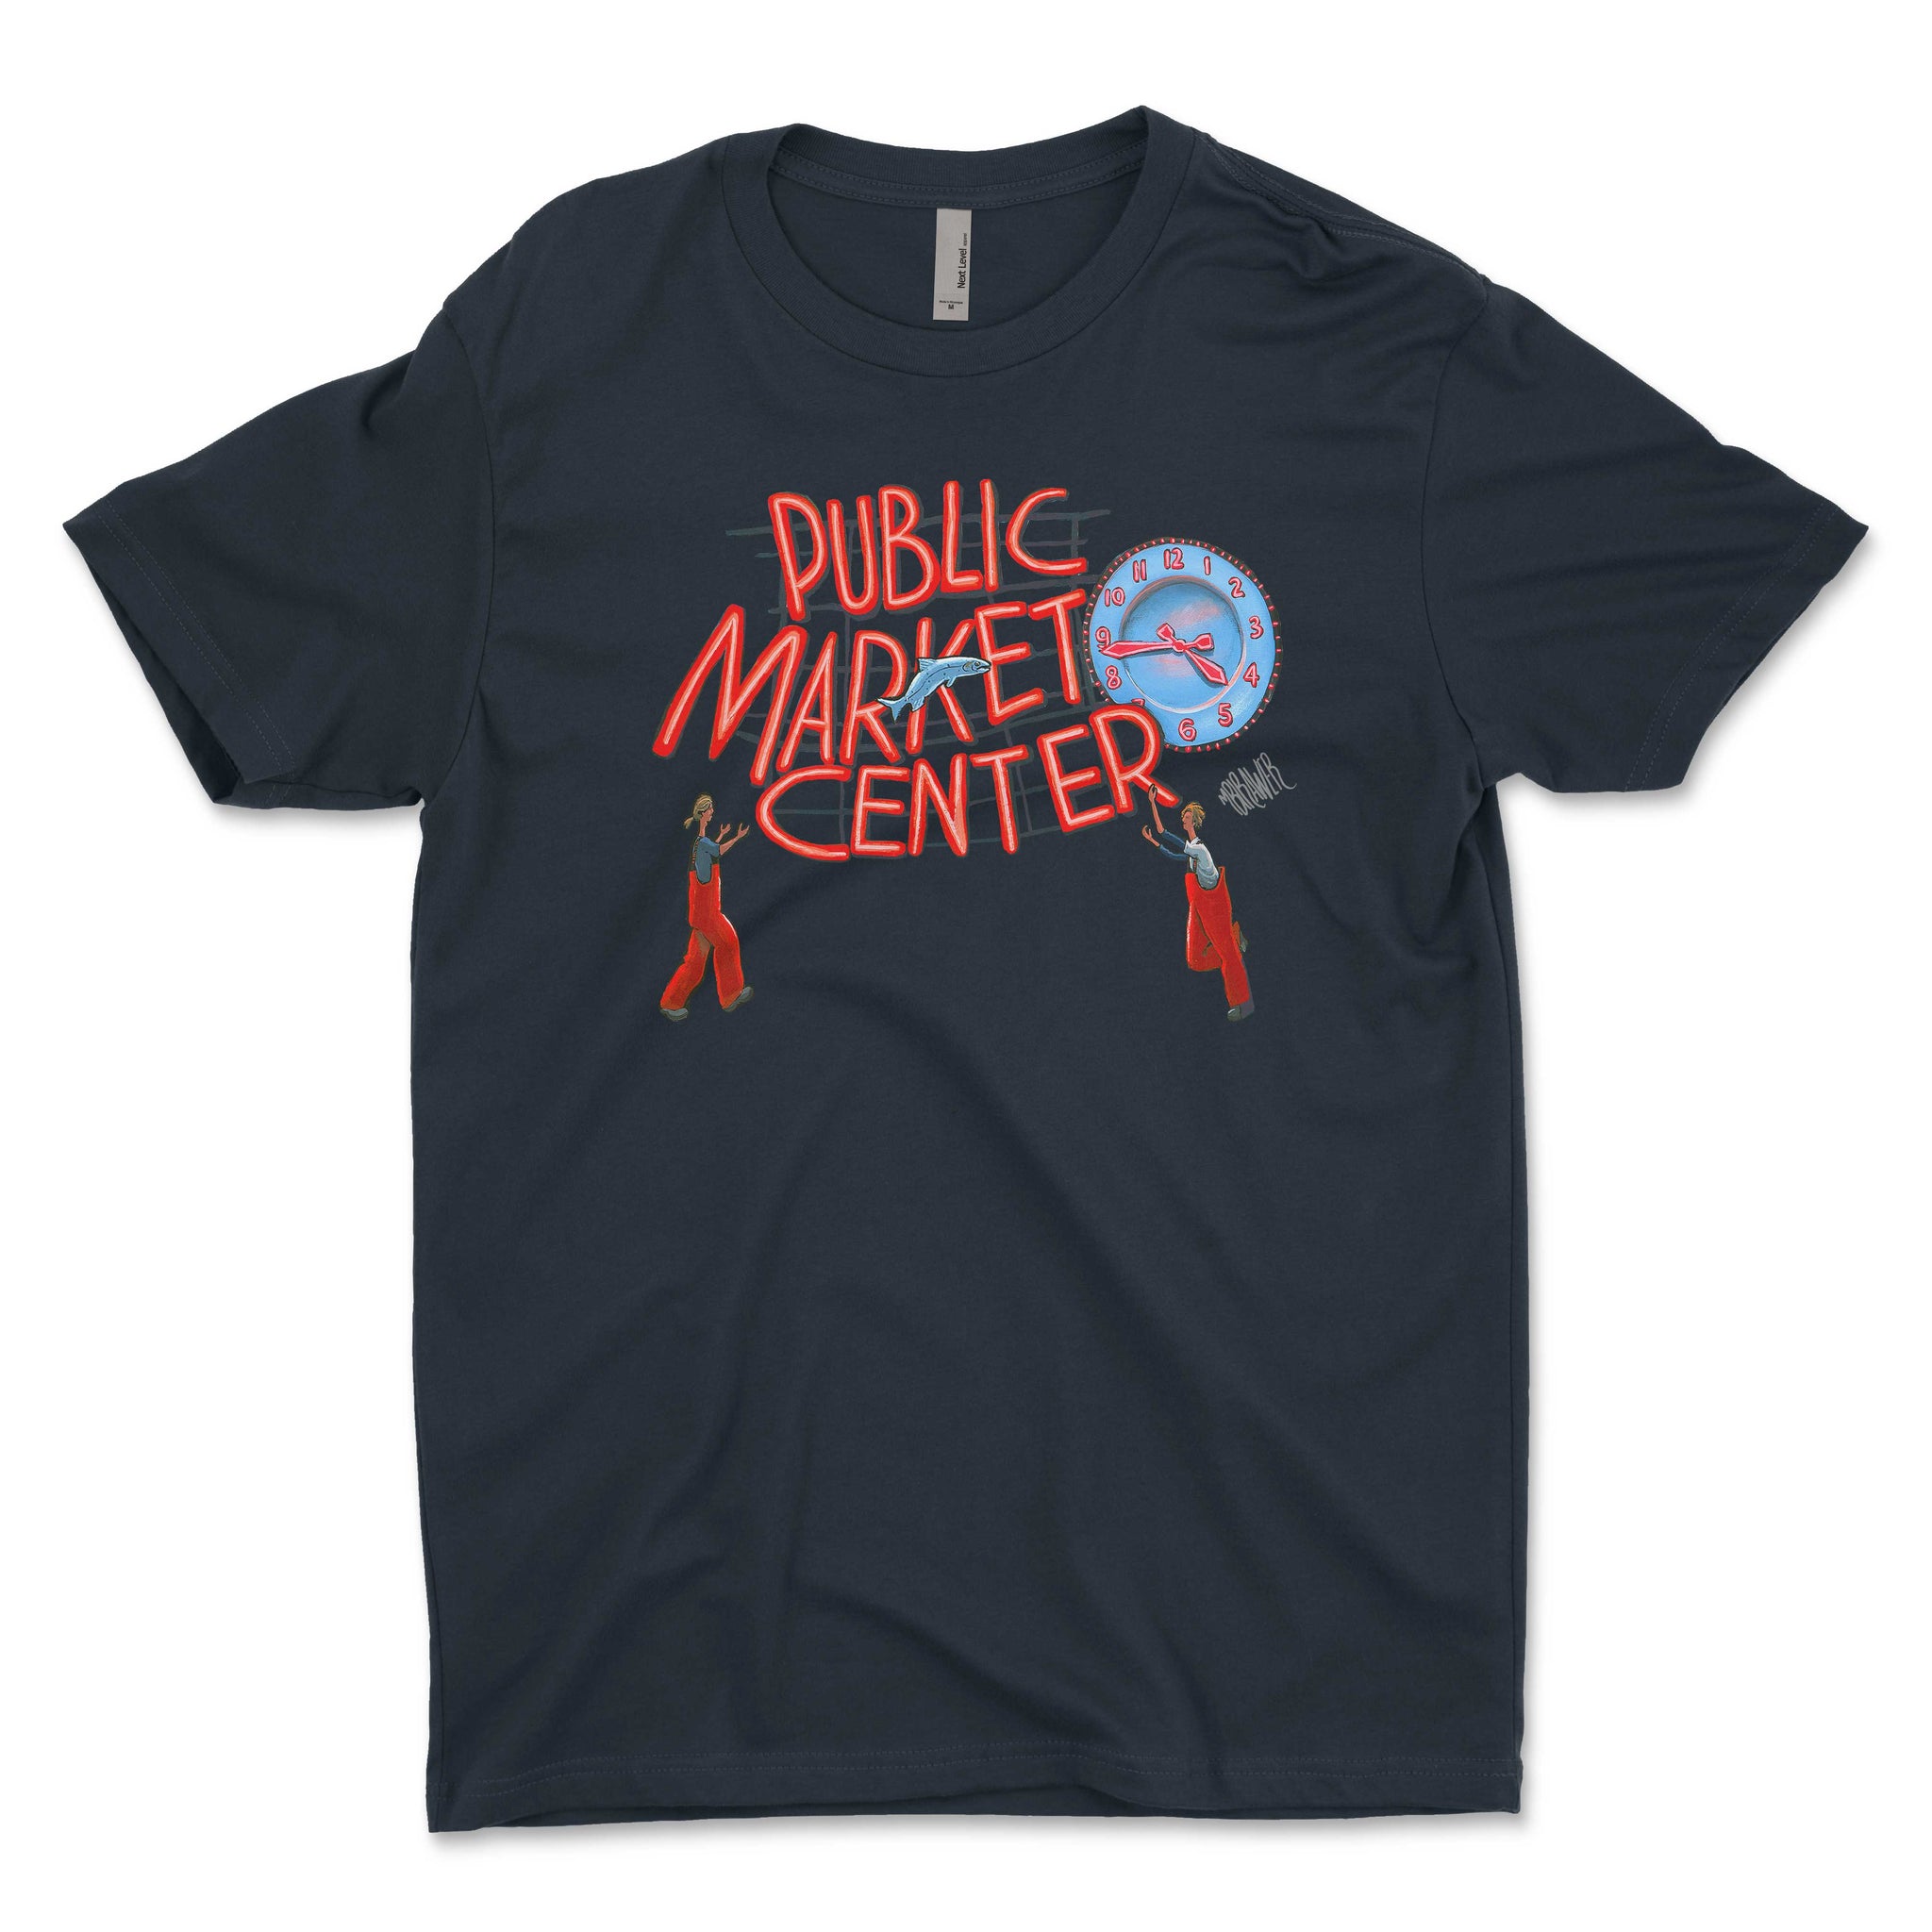 Pike Place Market unisex T-Shirt XL / Black